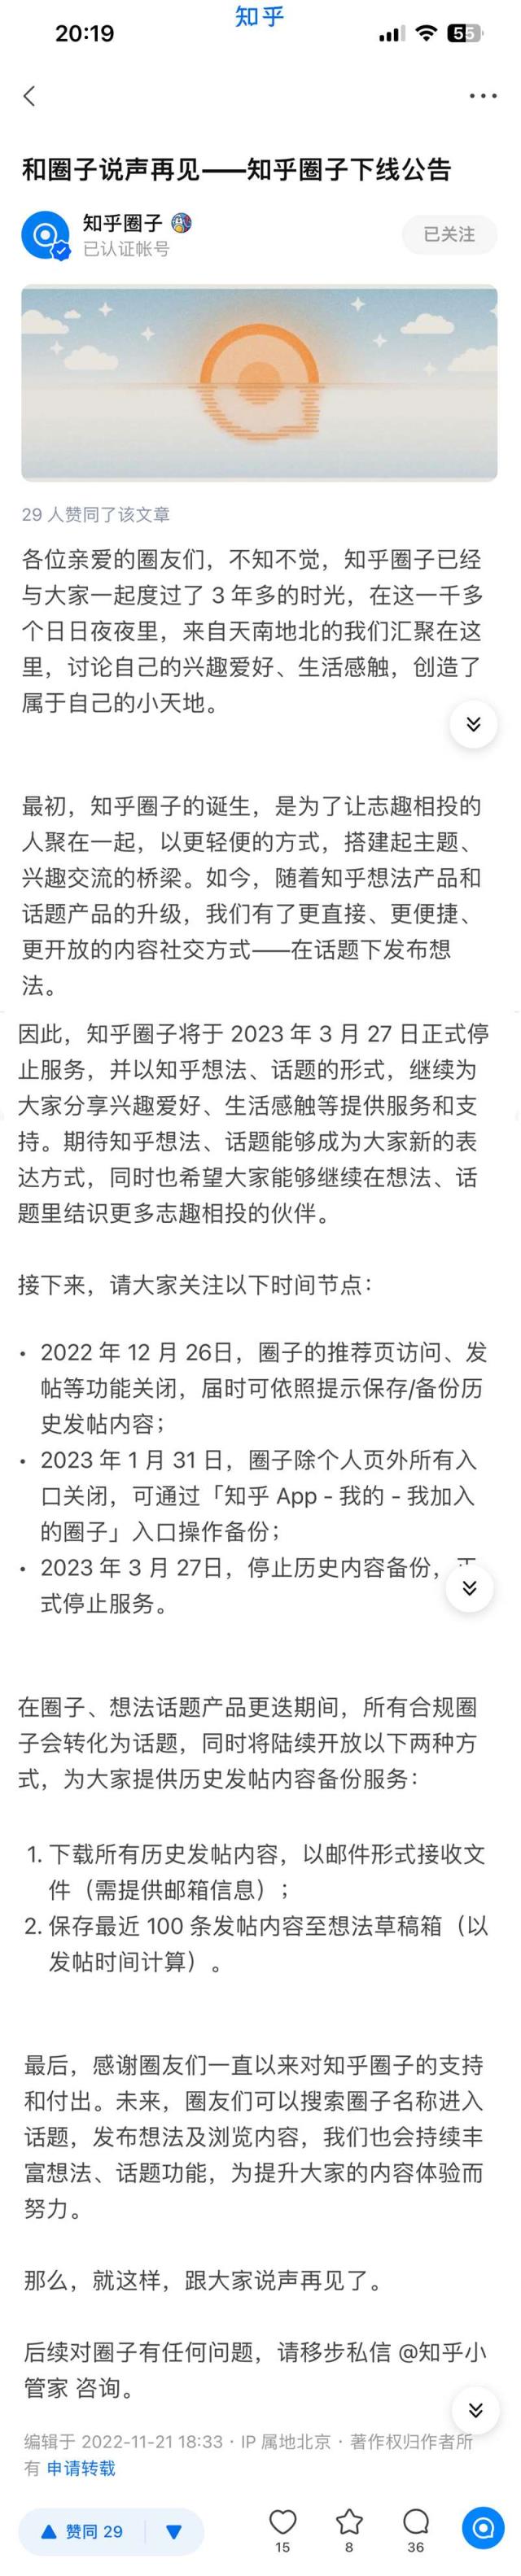 知乎圈子宣布 2023 年 3 月 27 日停止服务